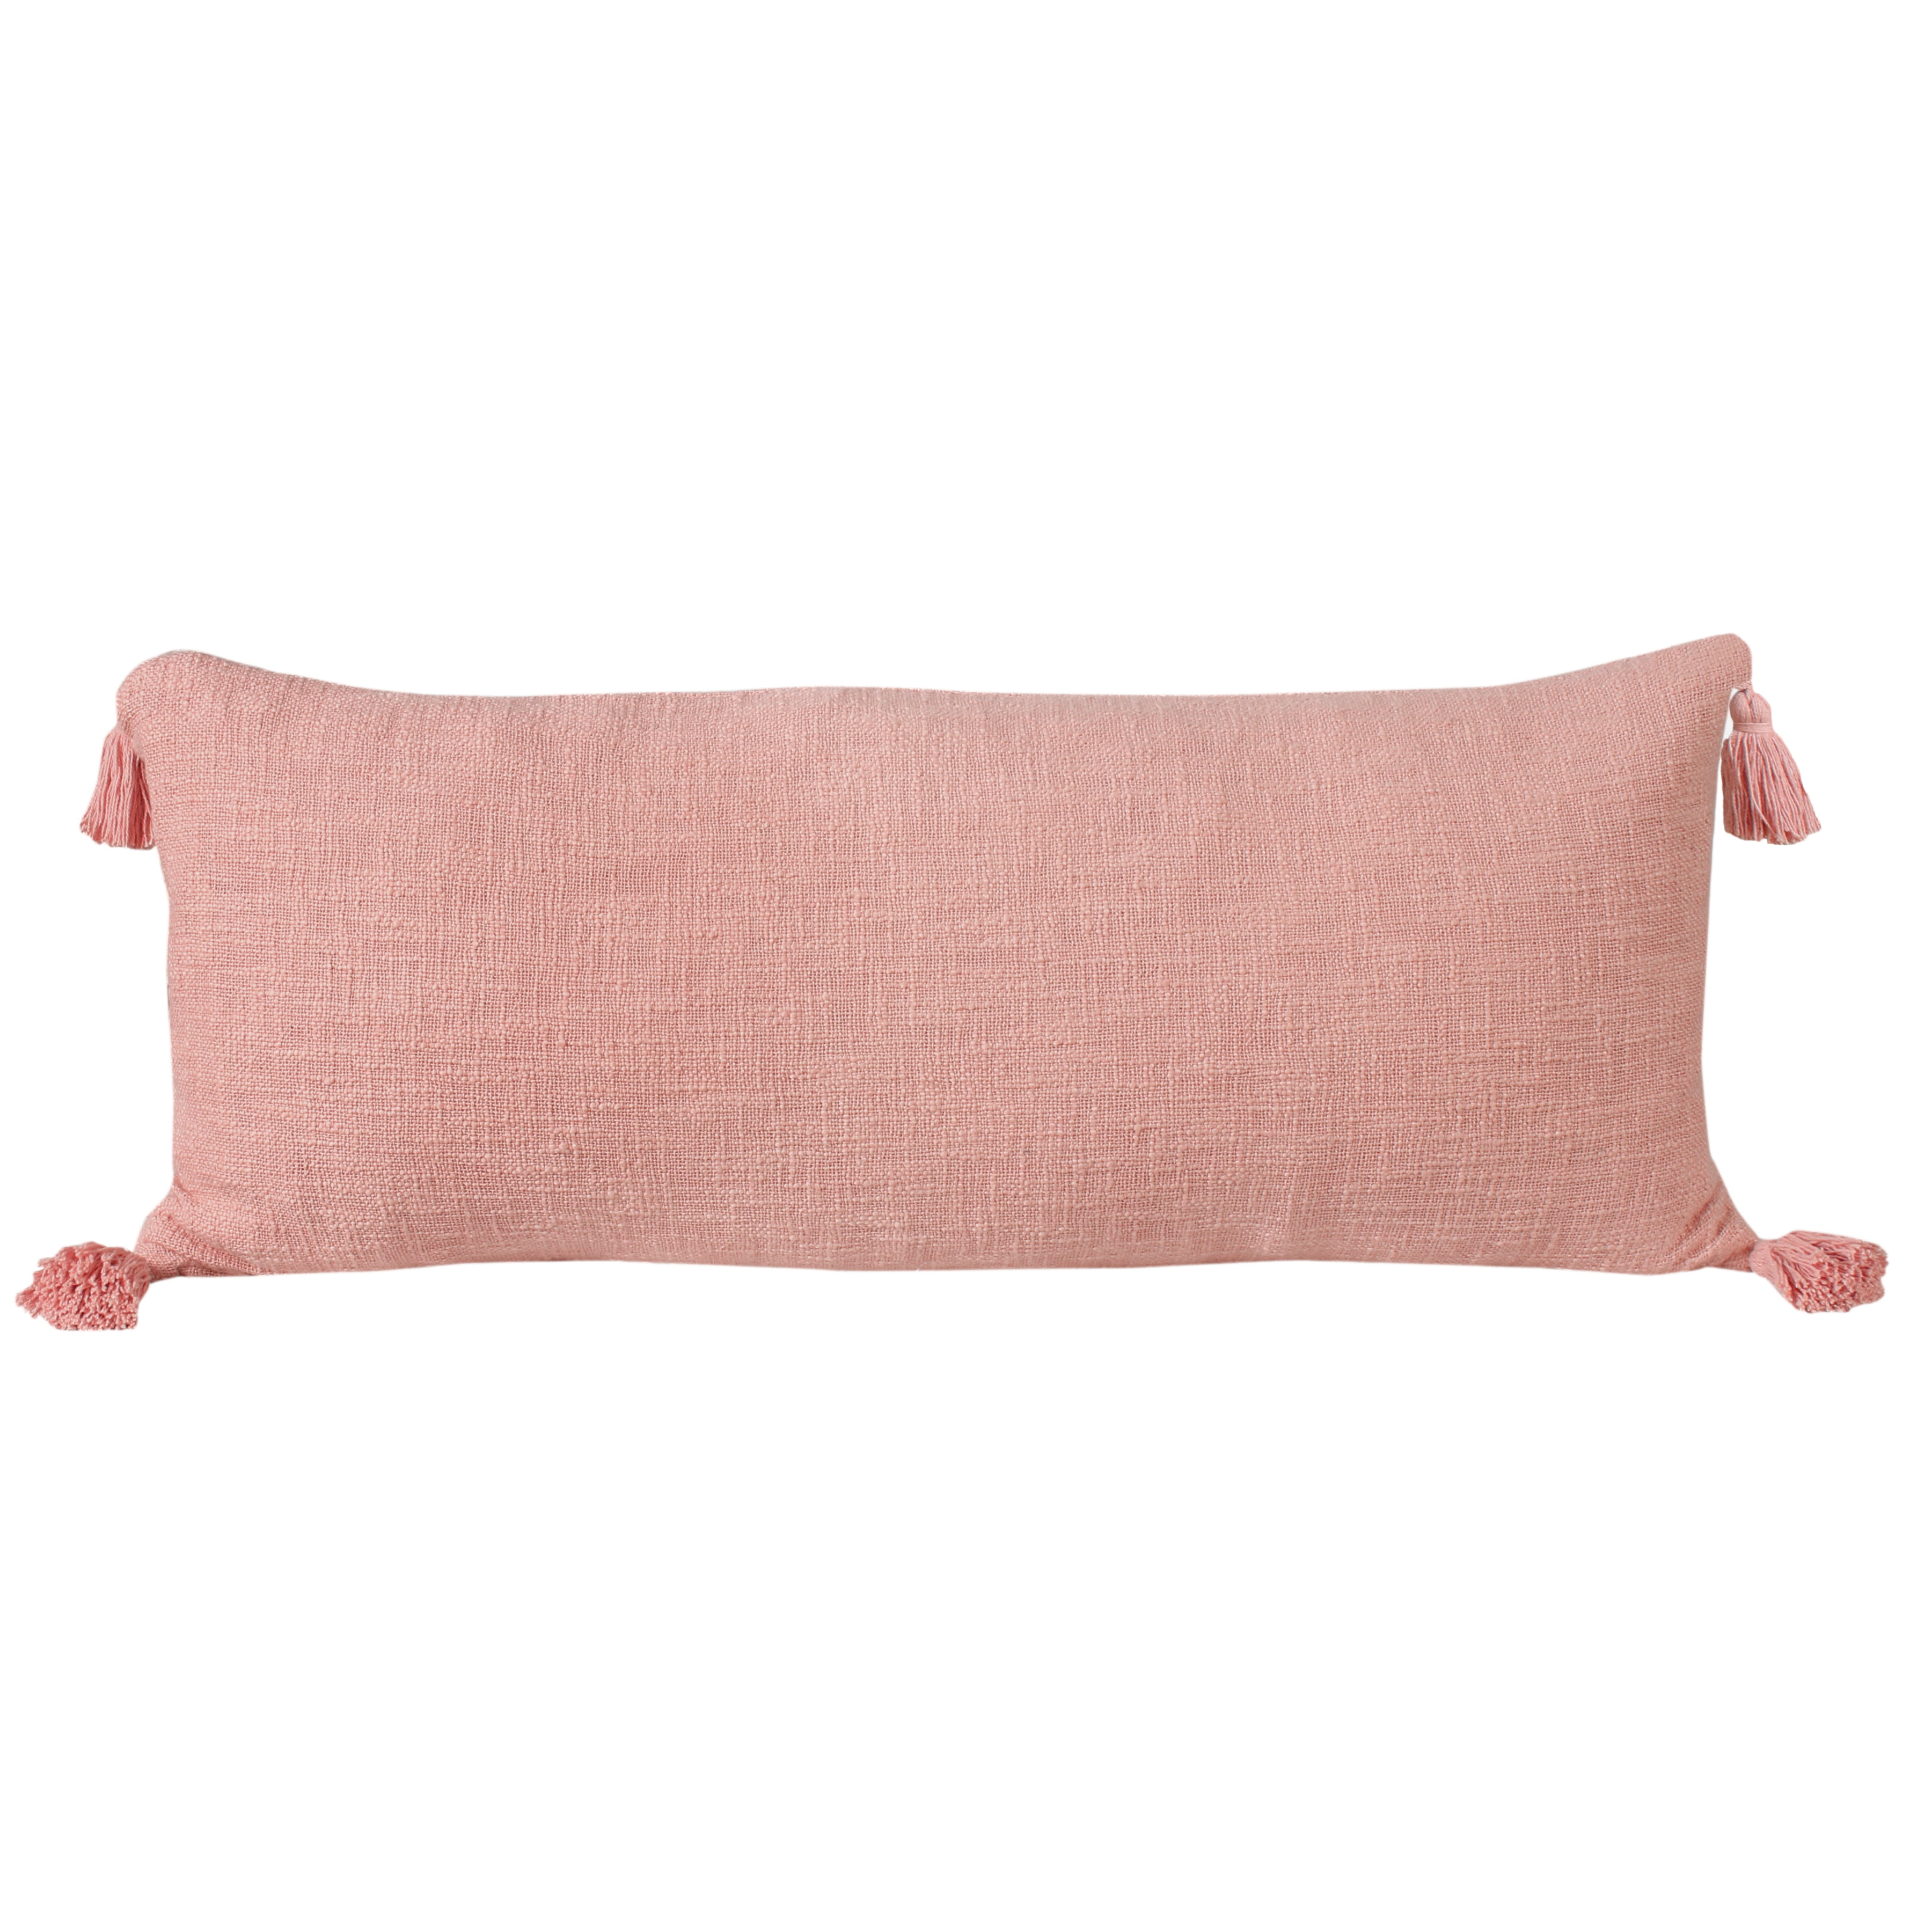 100% Cotton Pillow Braids Embroidery Throw Pillow Zipper Closer Fringes at corners Modern Design Lumber Throw Pillow Livingroom Décor